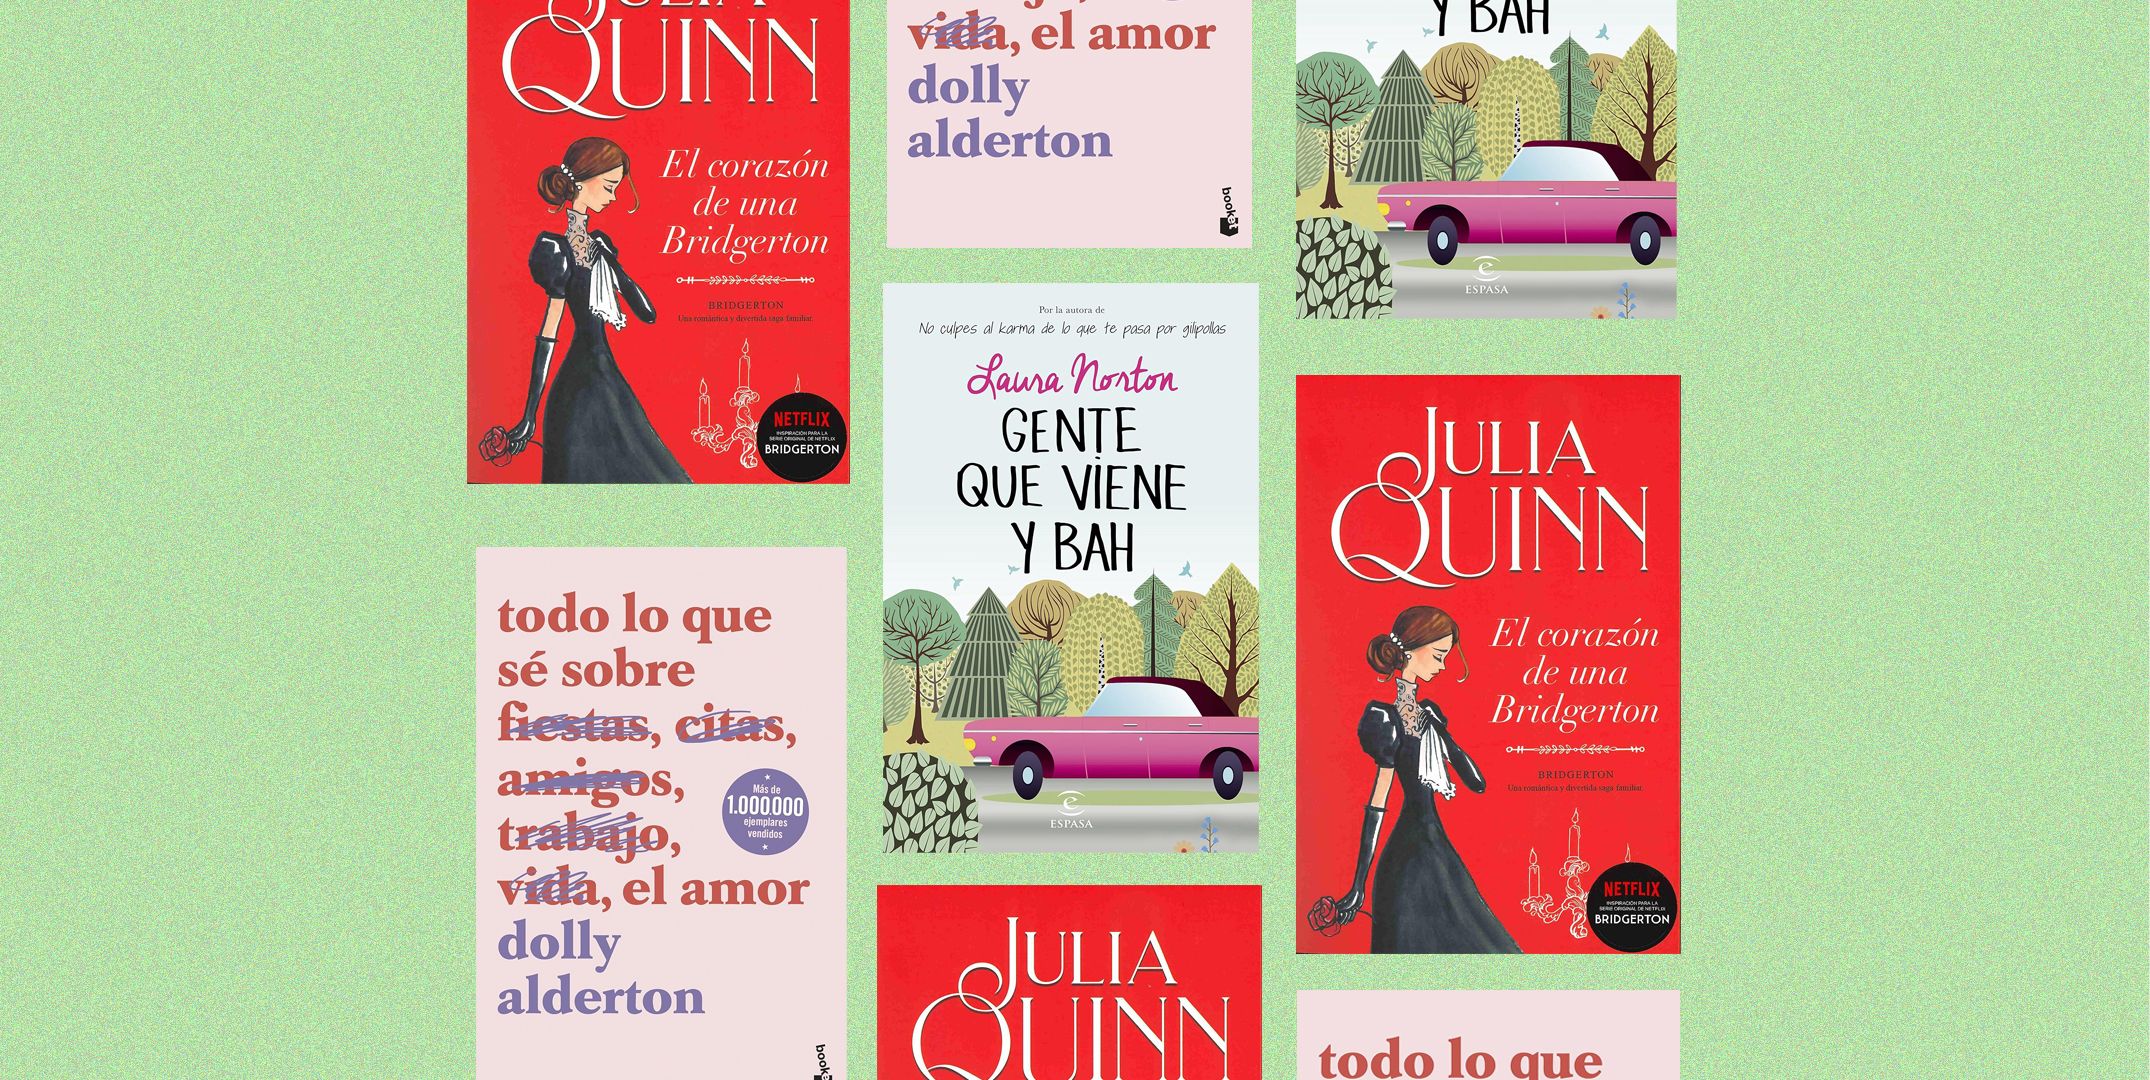 Nuestros mejores momentos – Libro de San Valentín: Cuaderno para anotar los  momentos más emotivos (Spanish Edition)